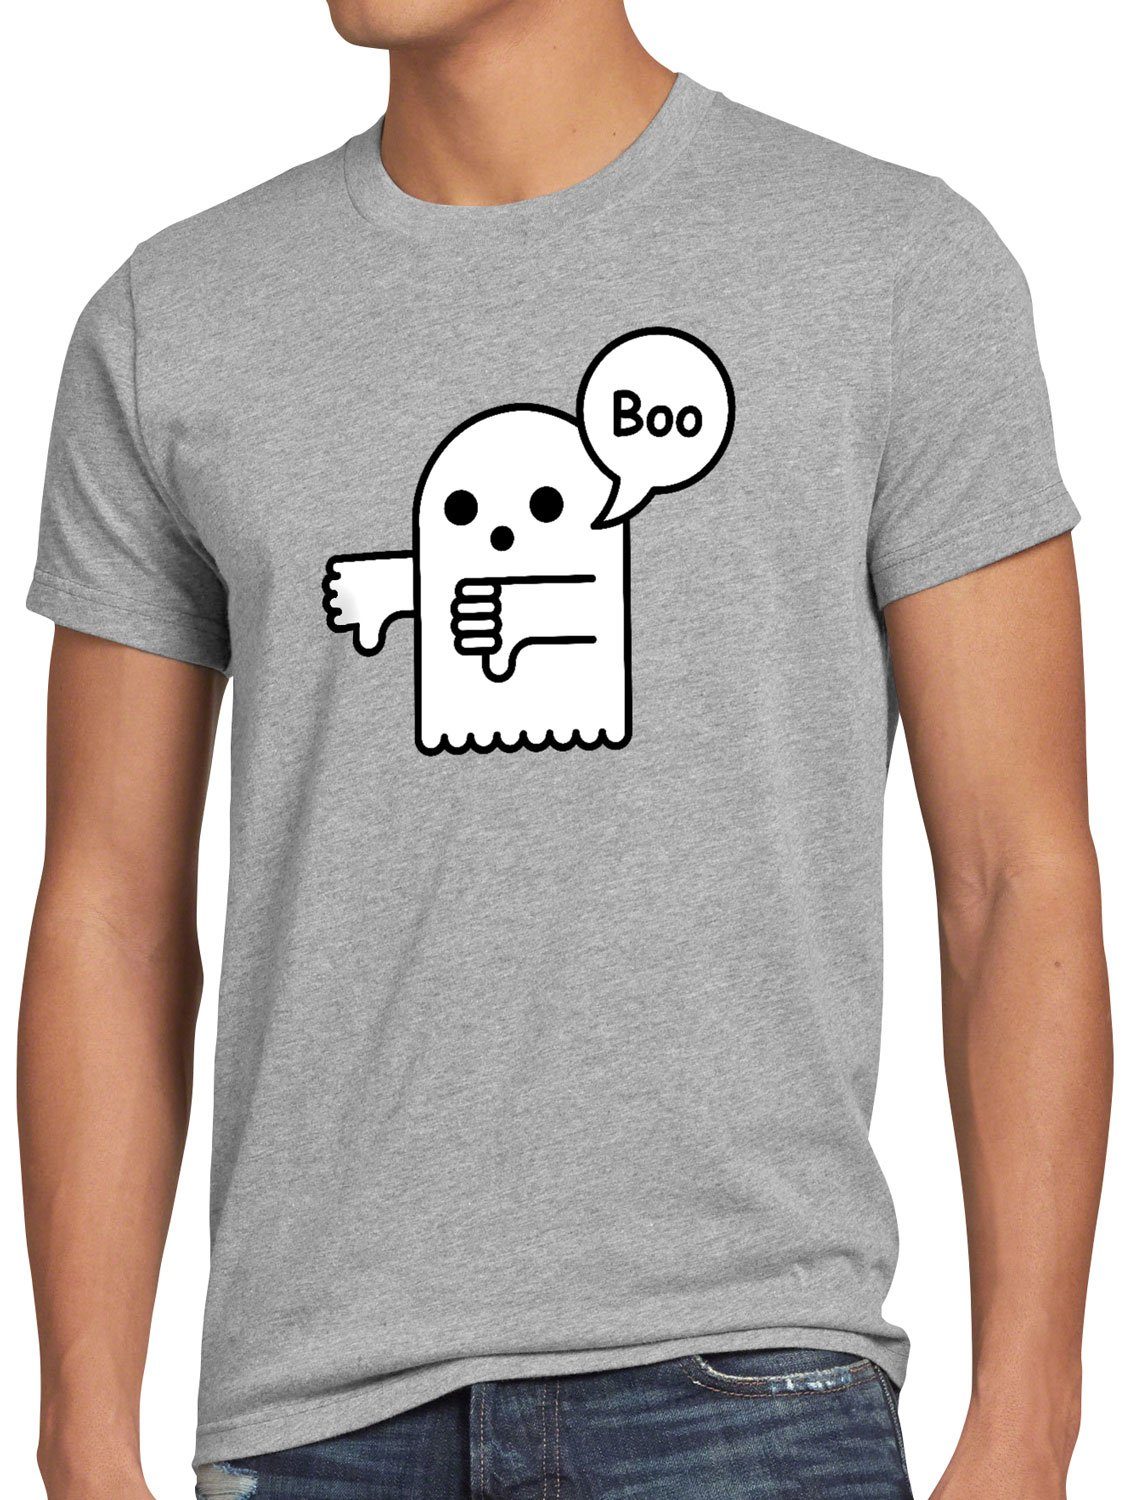 style3 Print-Shirt Herren T-Shirt Disapproval Boo Geist gespenst spuk Halloween Helloween